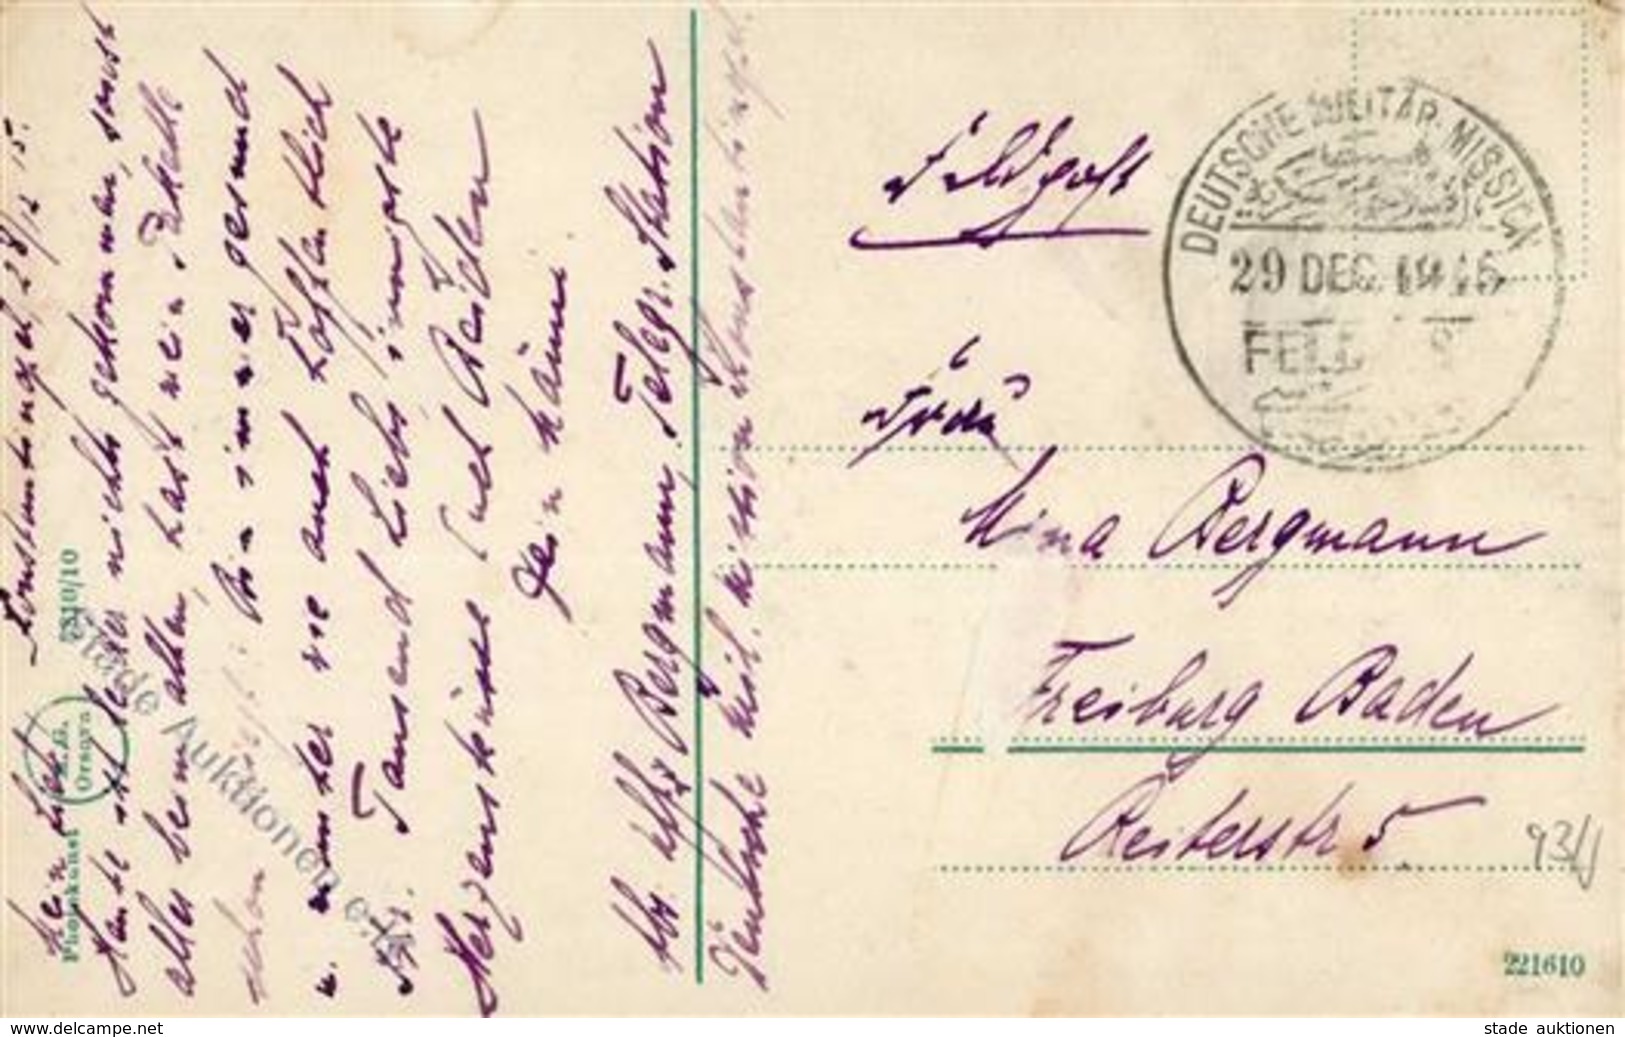 Deutsche Post Türkei Stempel Deutsche Militär Mission 29 Dec 1915 Feldpost I-II - History